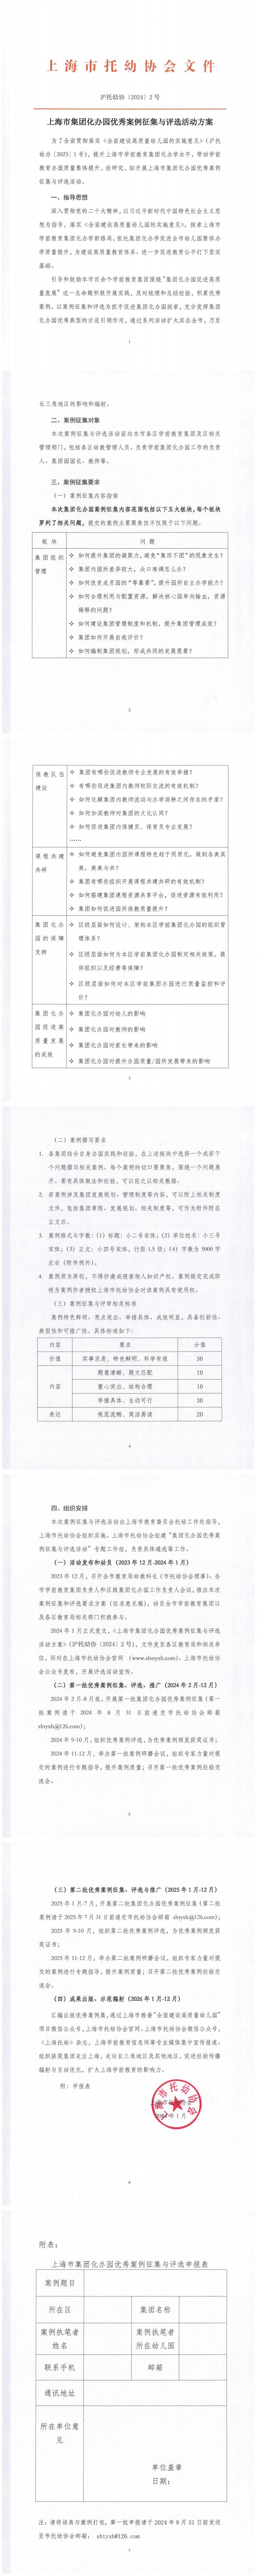 上海市集团化办园优秀案例征集与评选活动方案(1)_00.jpg